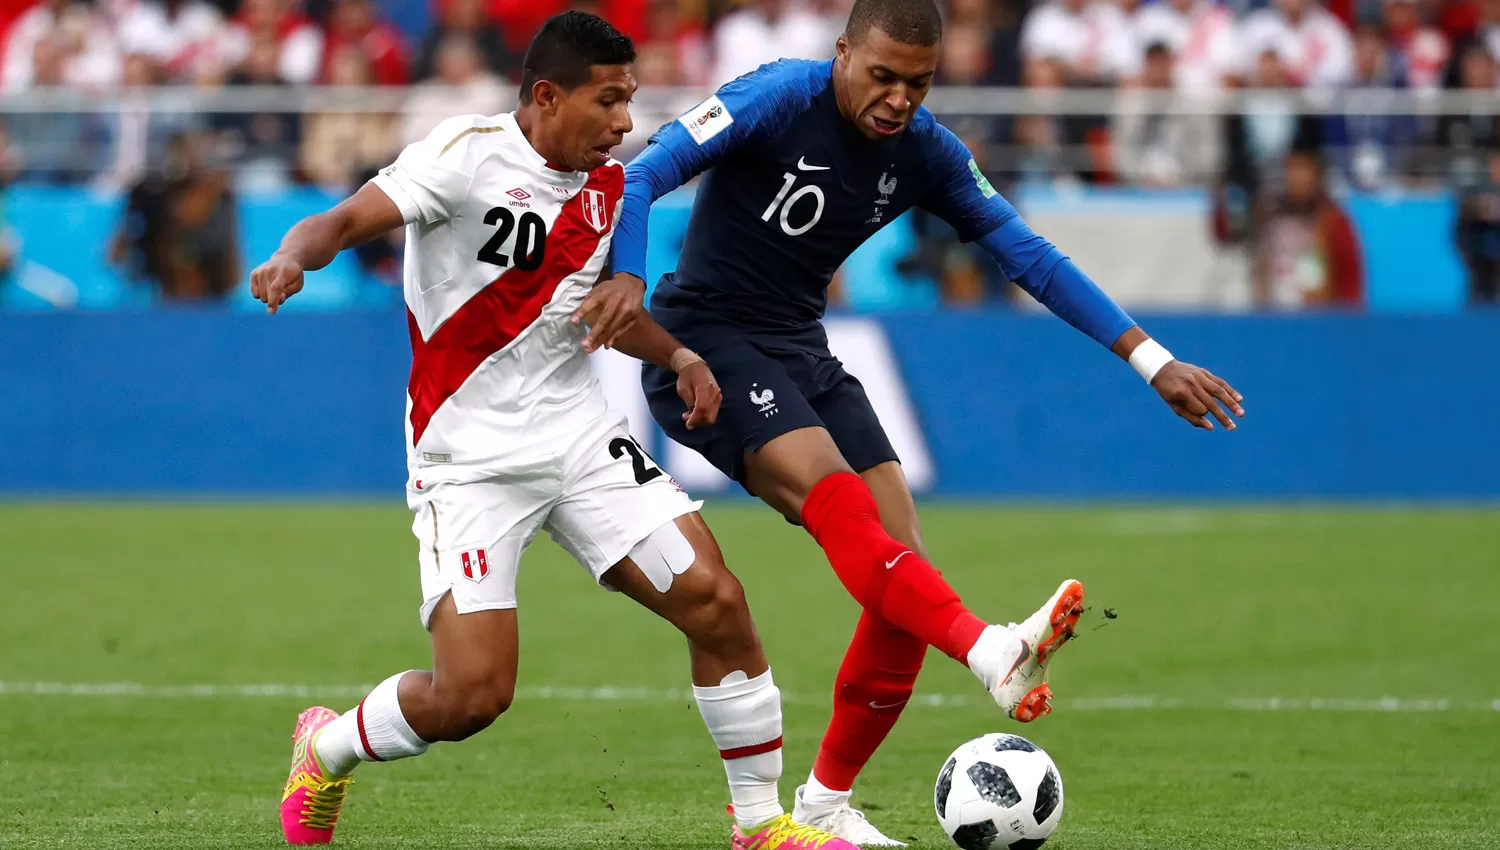 POR UN TRIUNFO. Perú perdió en el debut y está obligado de vencer a Francia. (REUTERS)